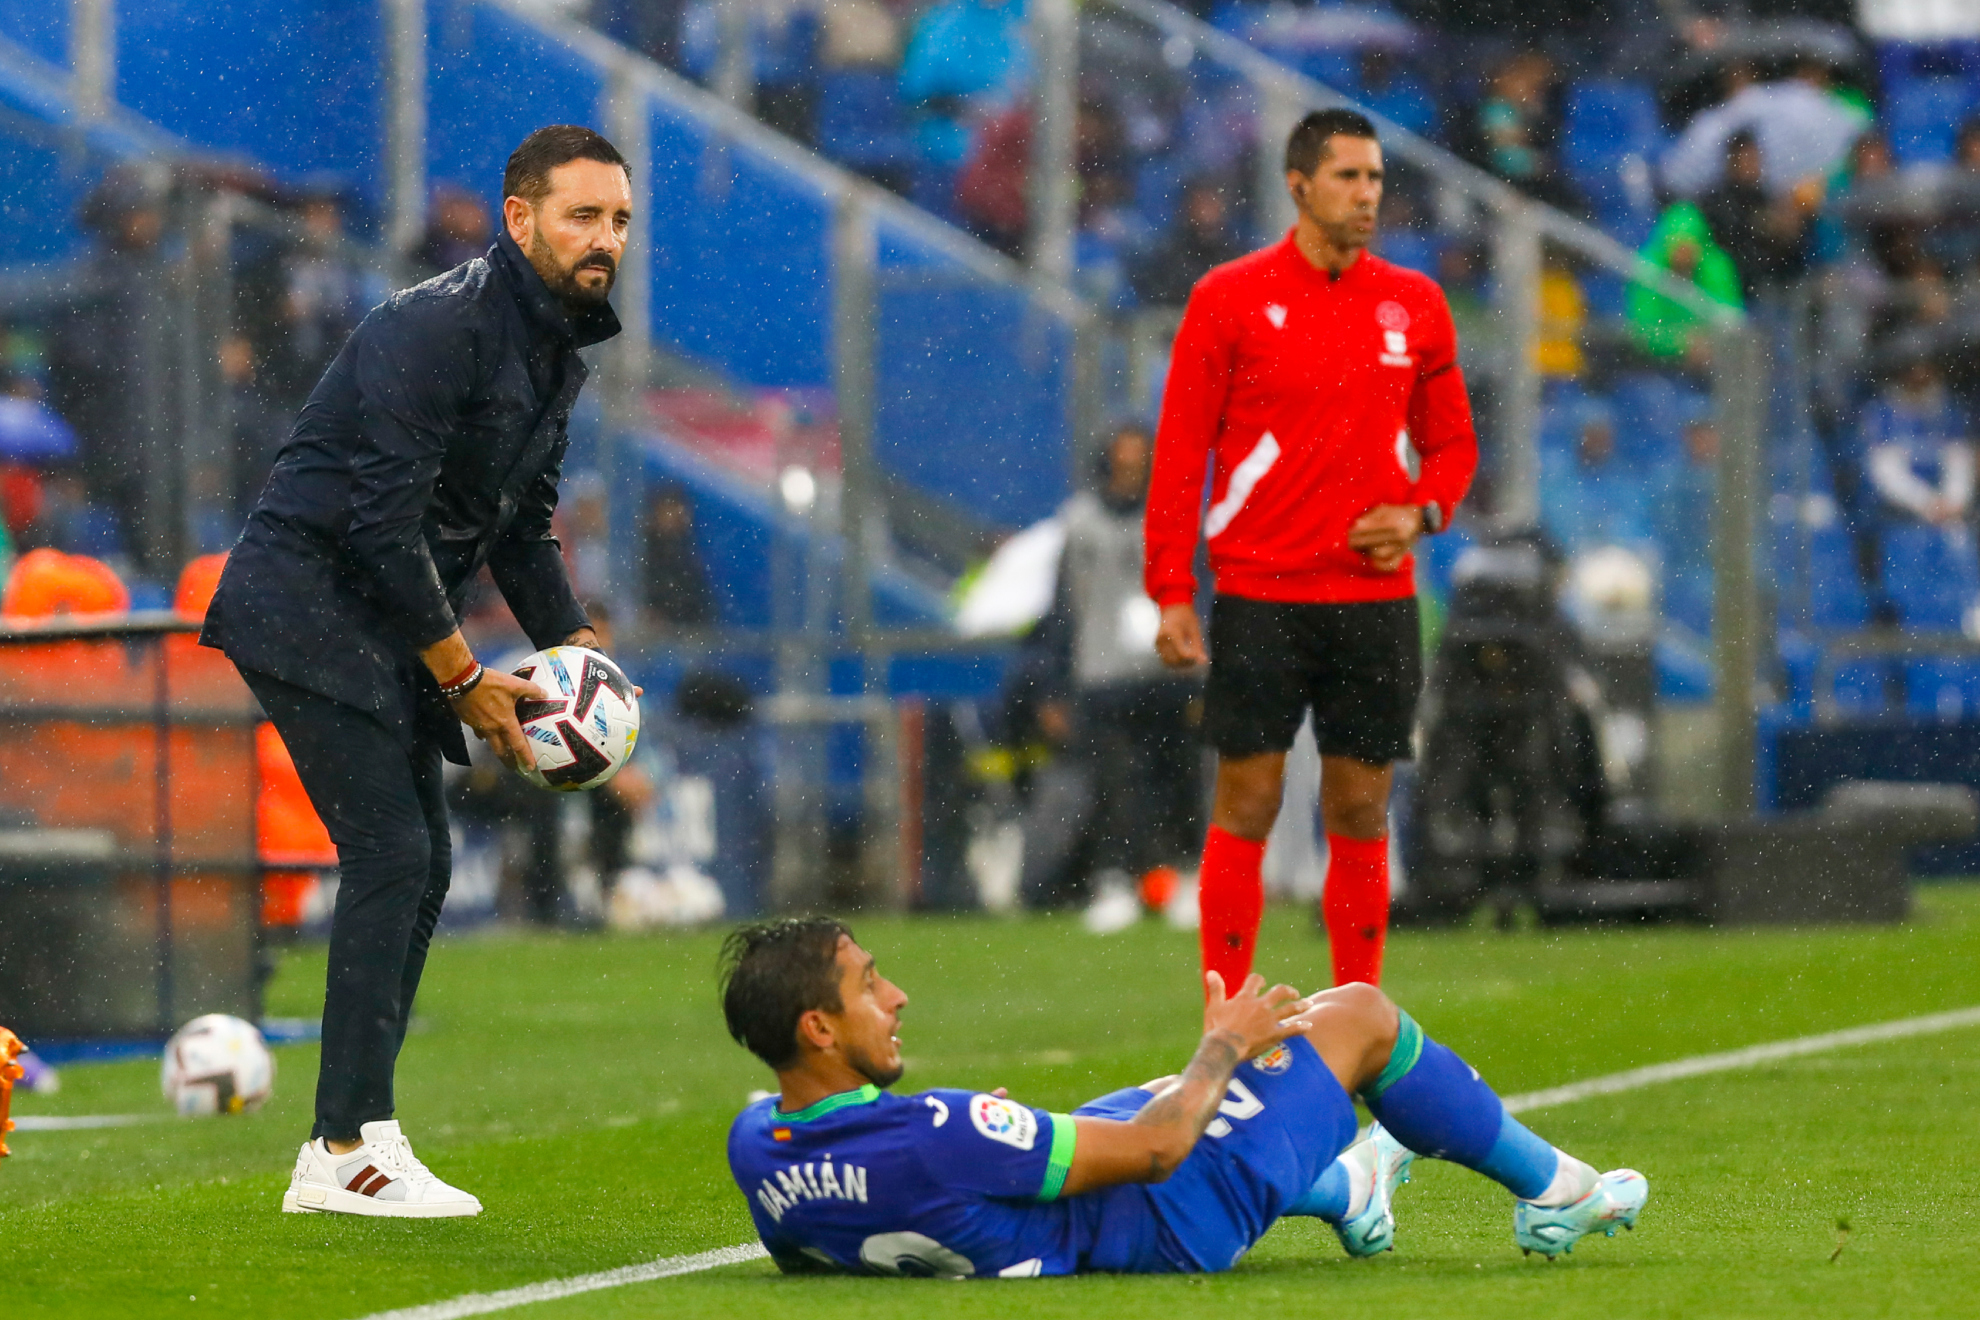 Bordalás observa a Damián, en el suelo, durante un partido de esta temporada.